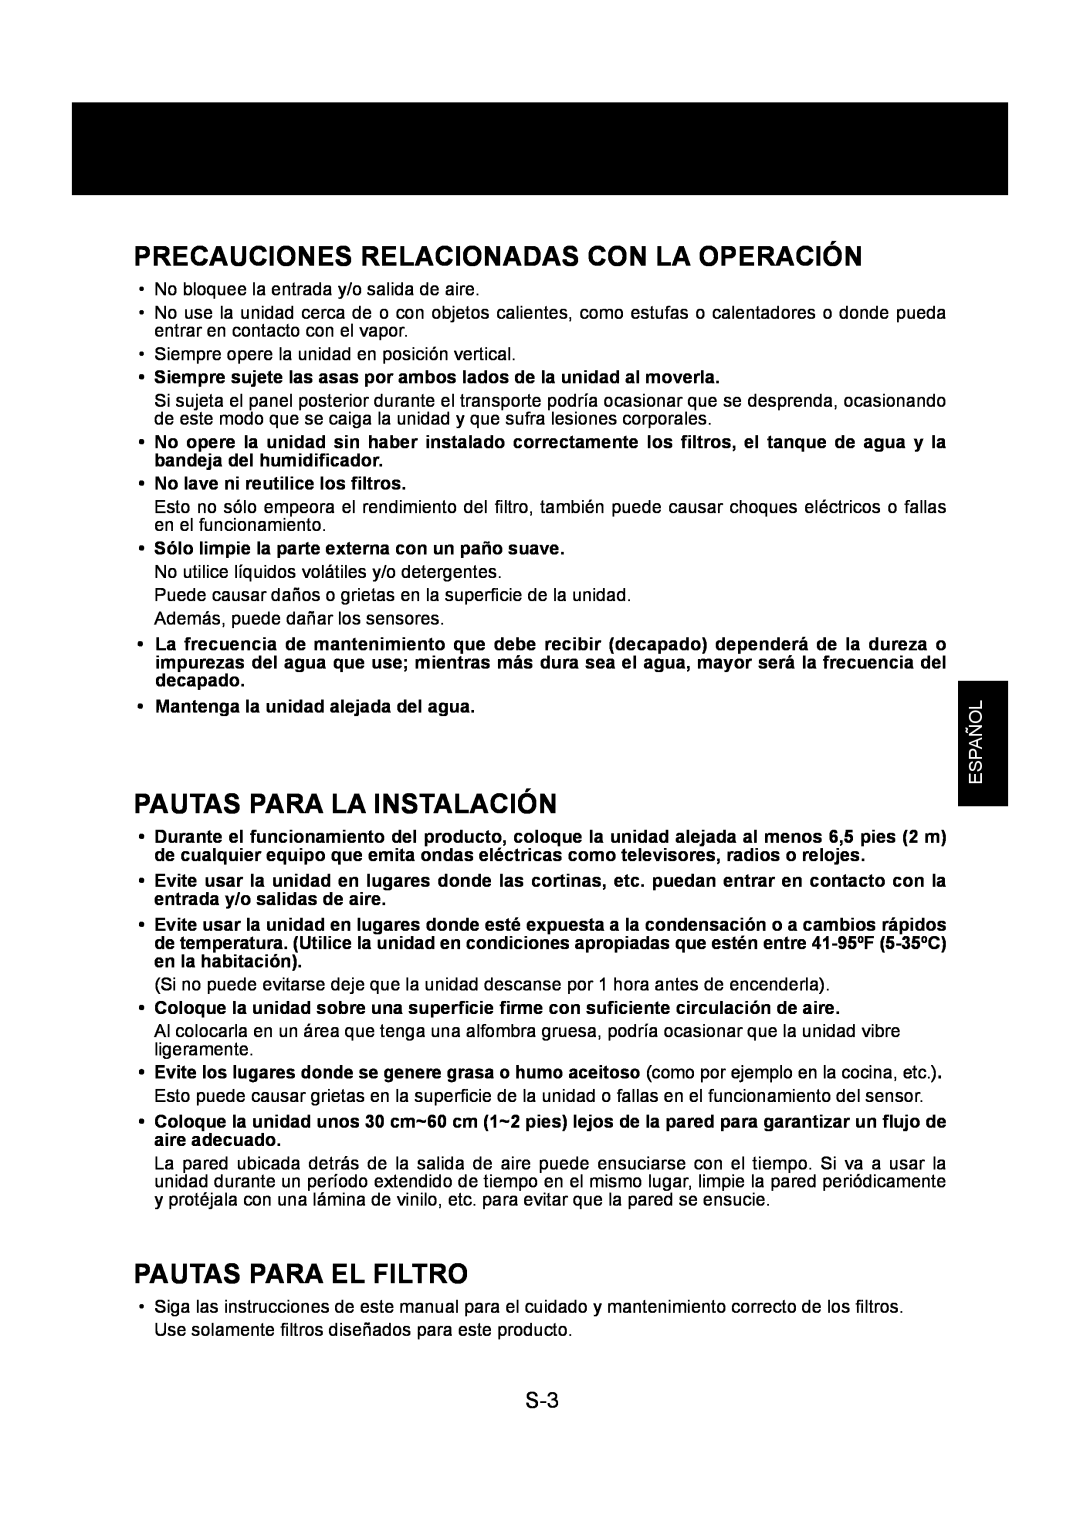 Sharp KC-830U Precauciones Relacionadas Con La Operación, Pautas Para La Instalación, Pautas Para El Filtro, Español 